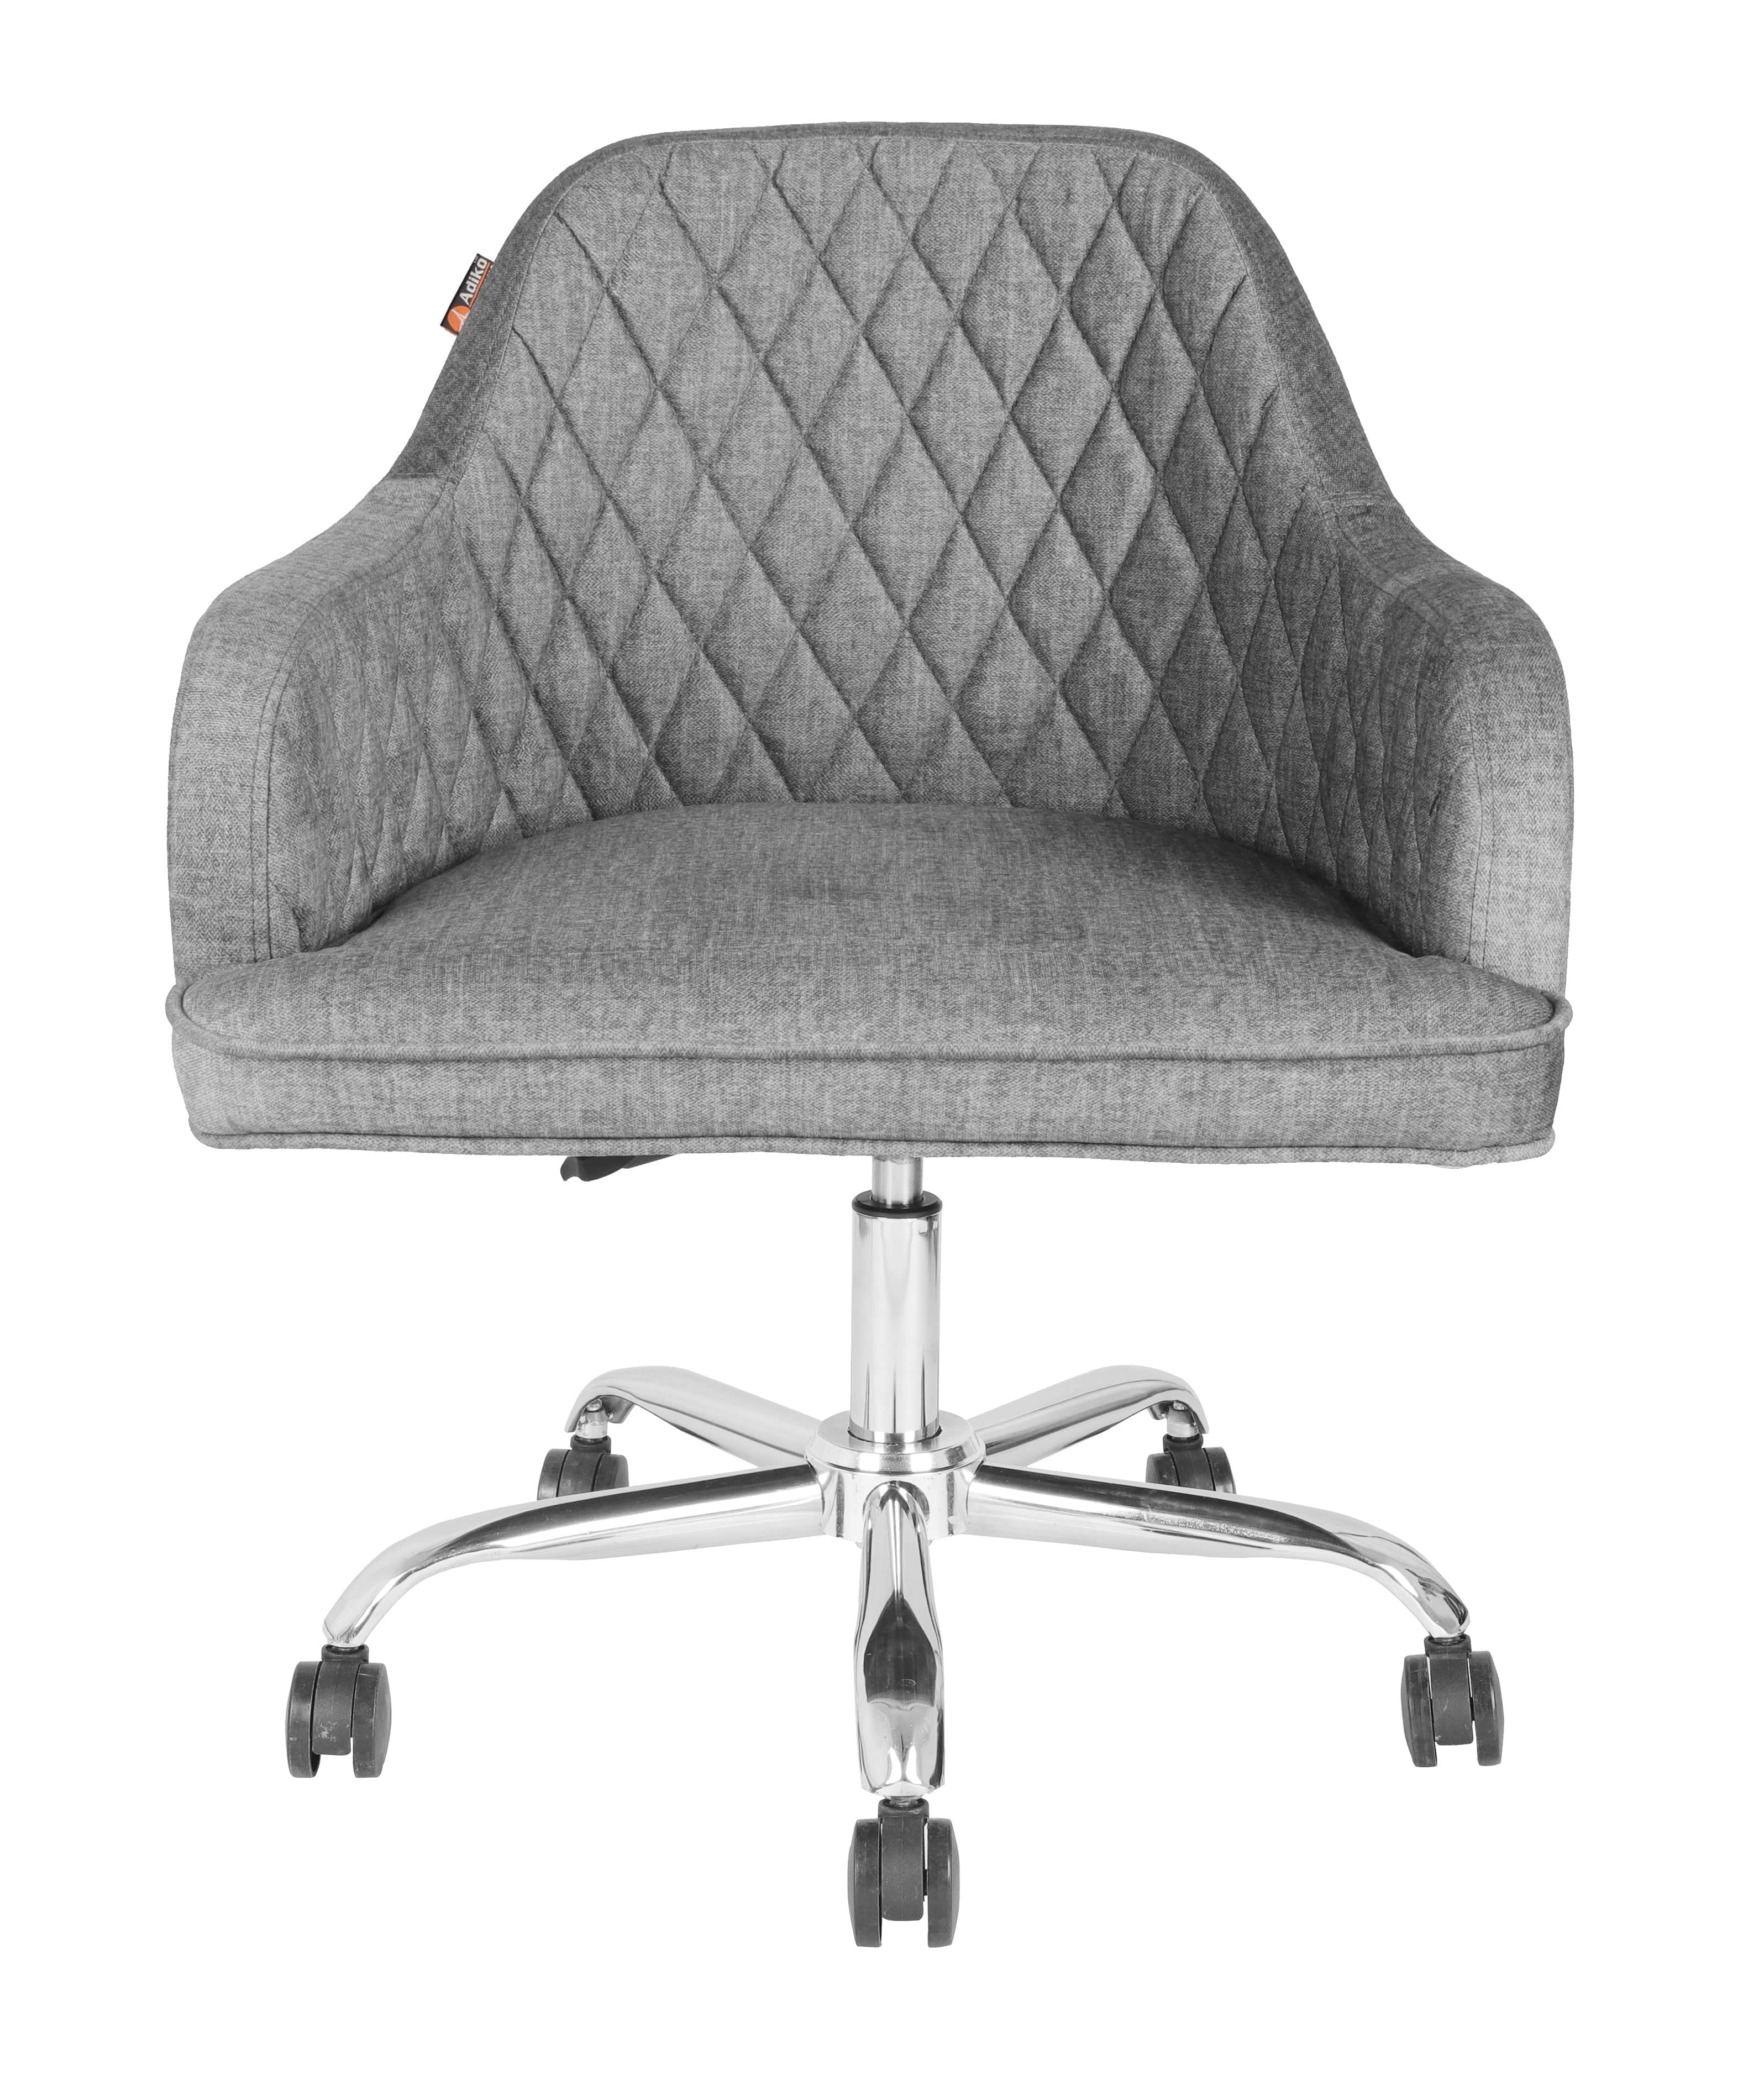 Adiko Lounge chair in Grey